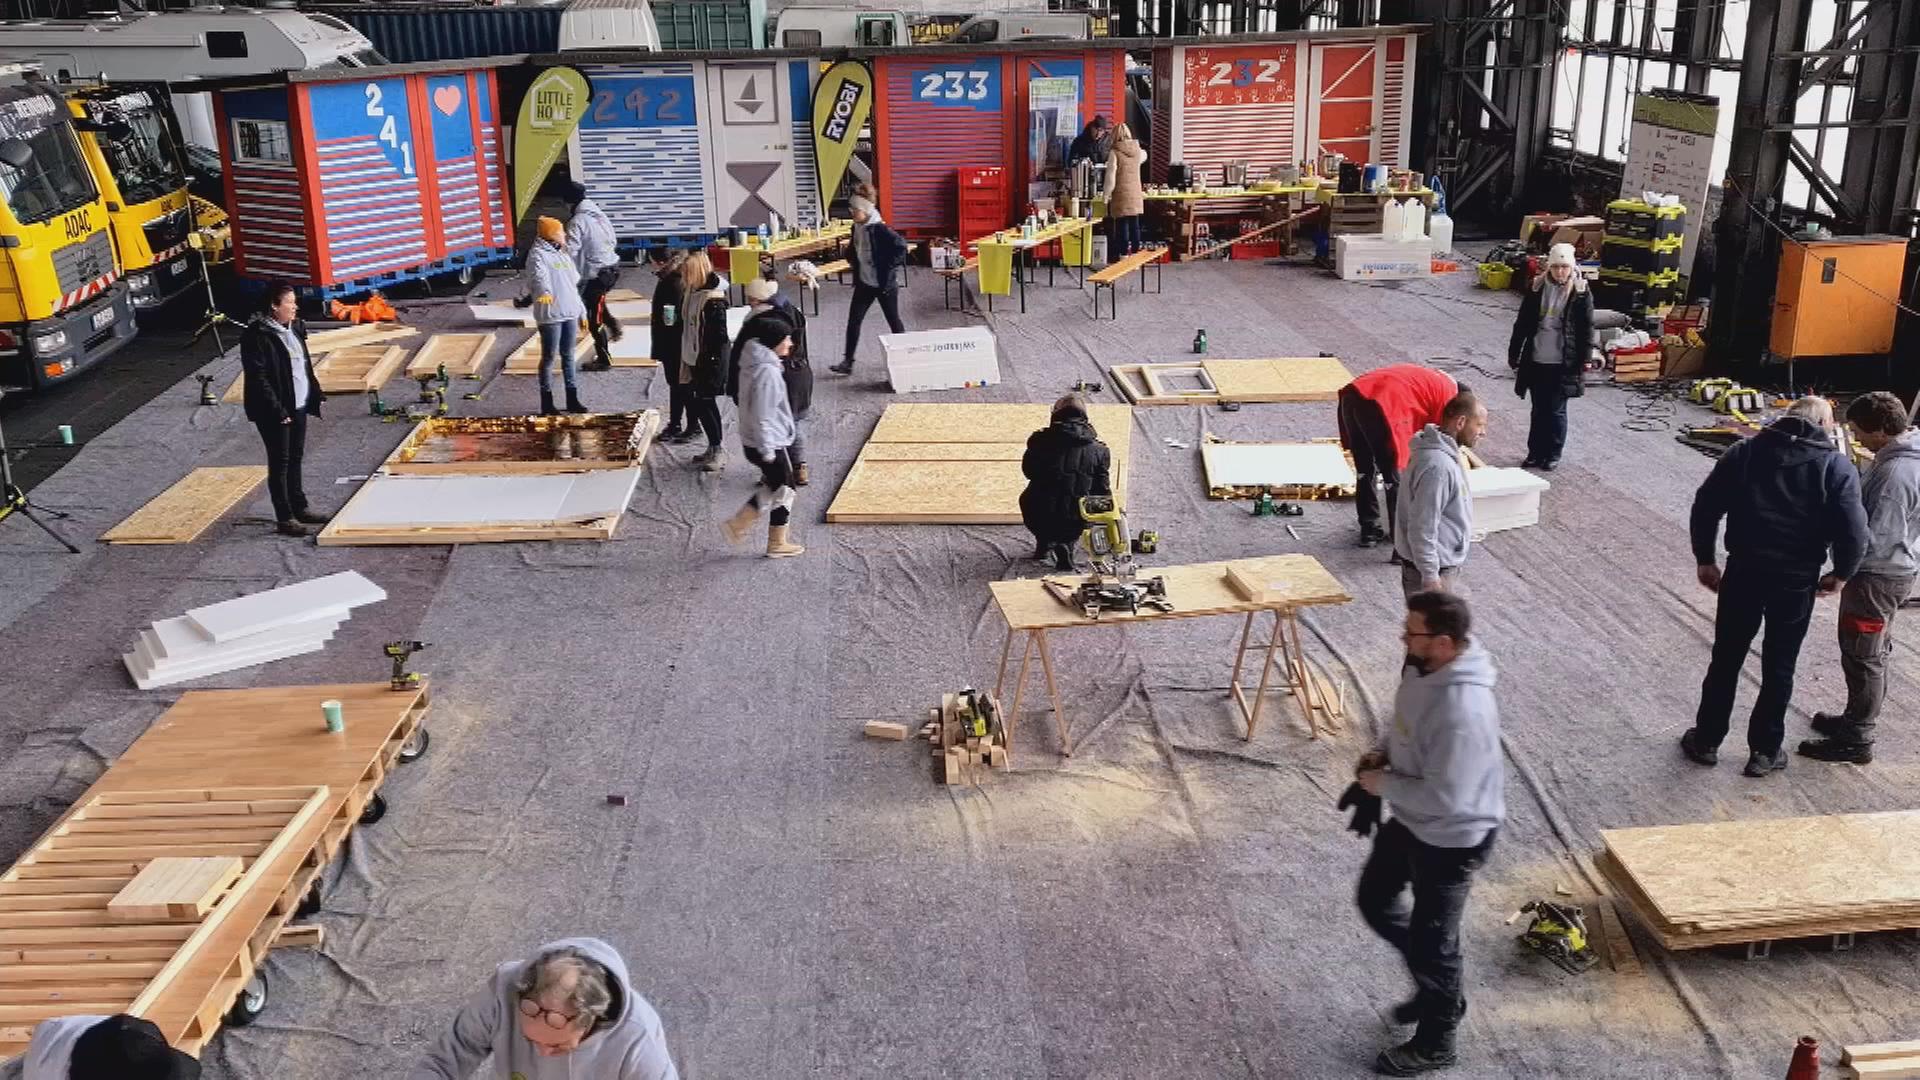 Herstellung von kleinen, bunten Holz-Hütten für Obdachlose in Berlin.